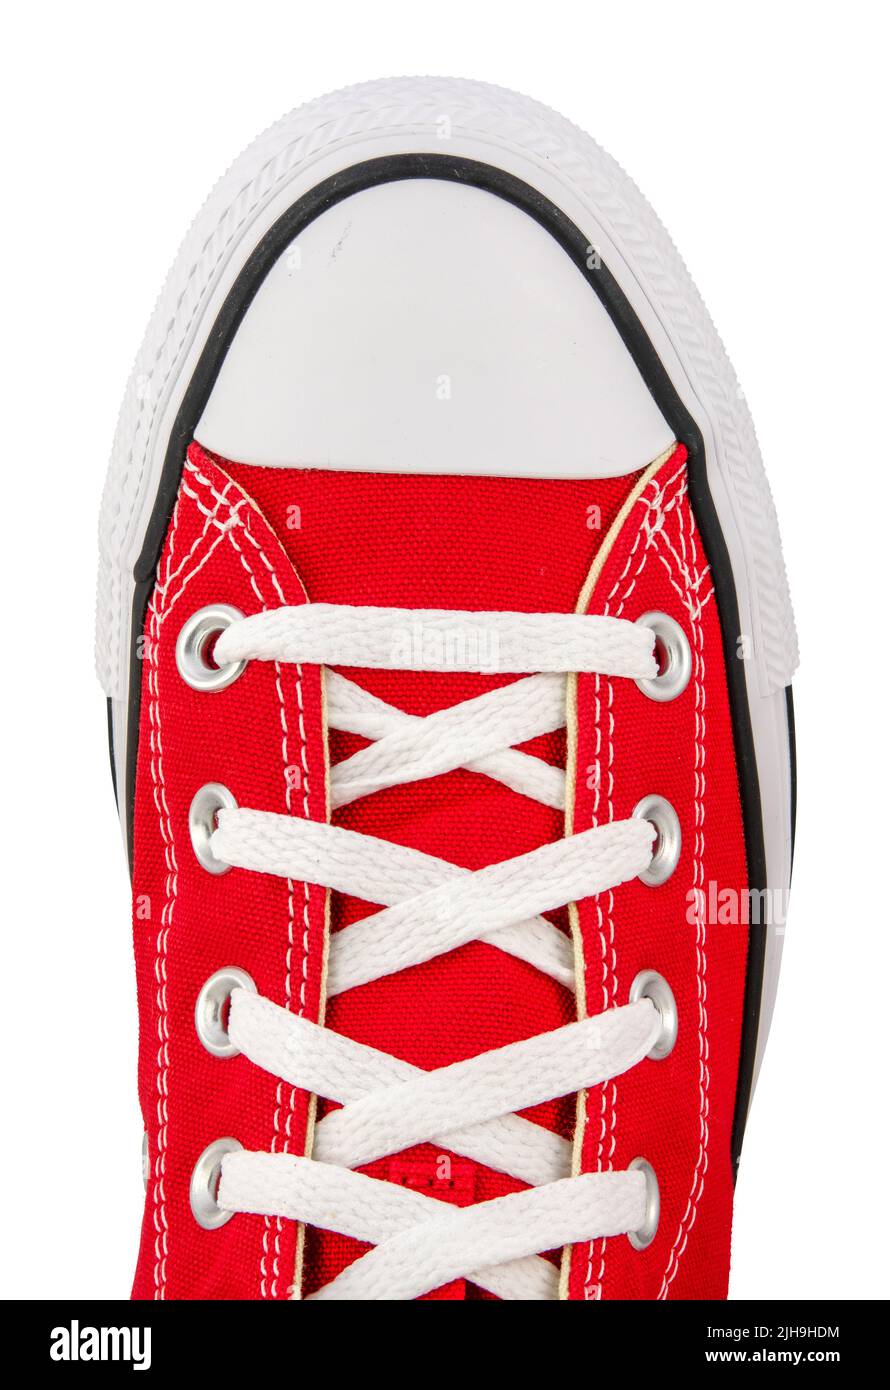 Vista aislada desde arriba de Una zapatilla de lona roja retro sobre un fondo blanco Foto de stock